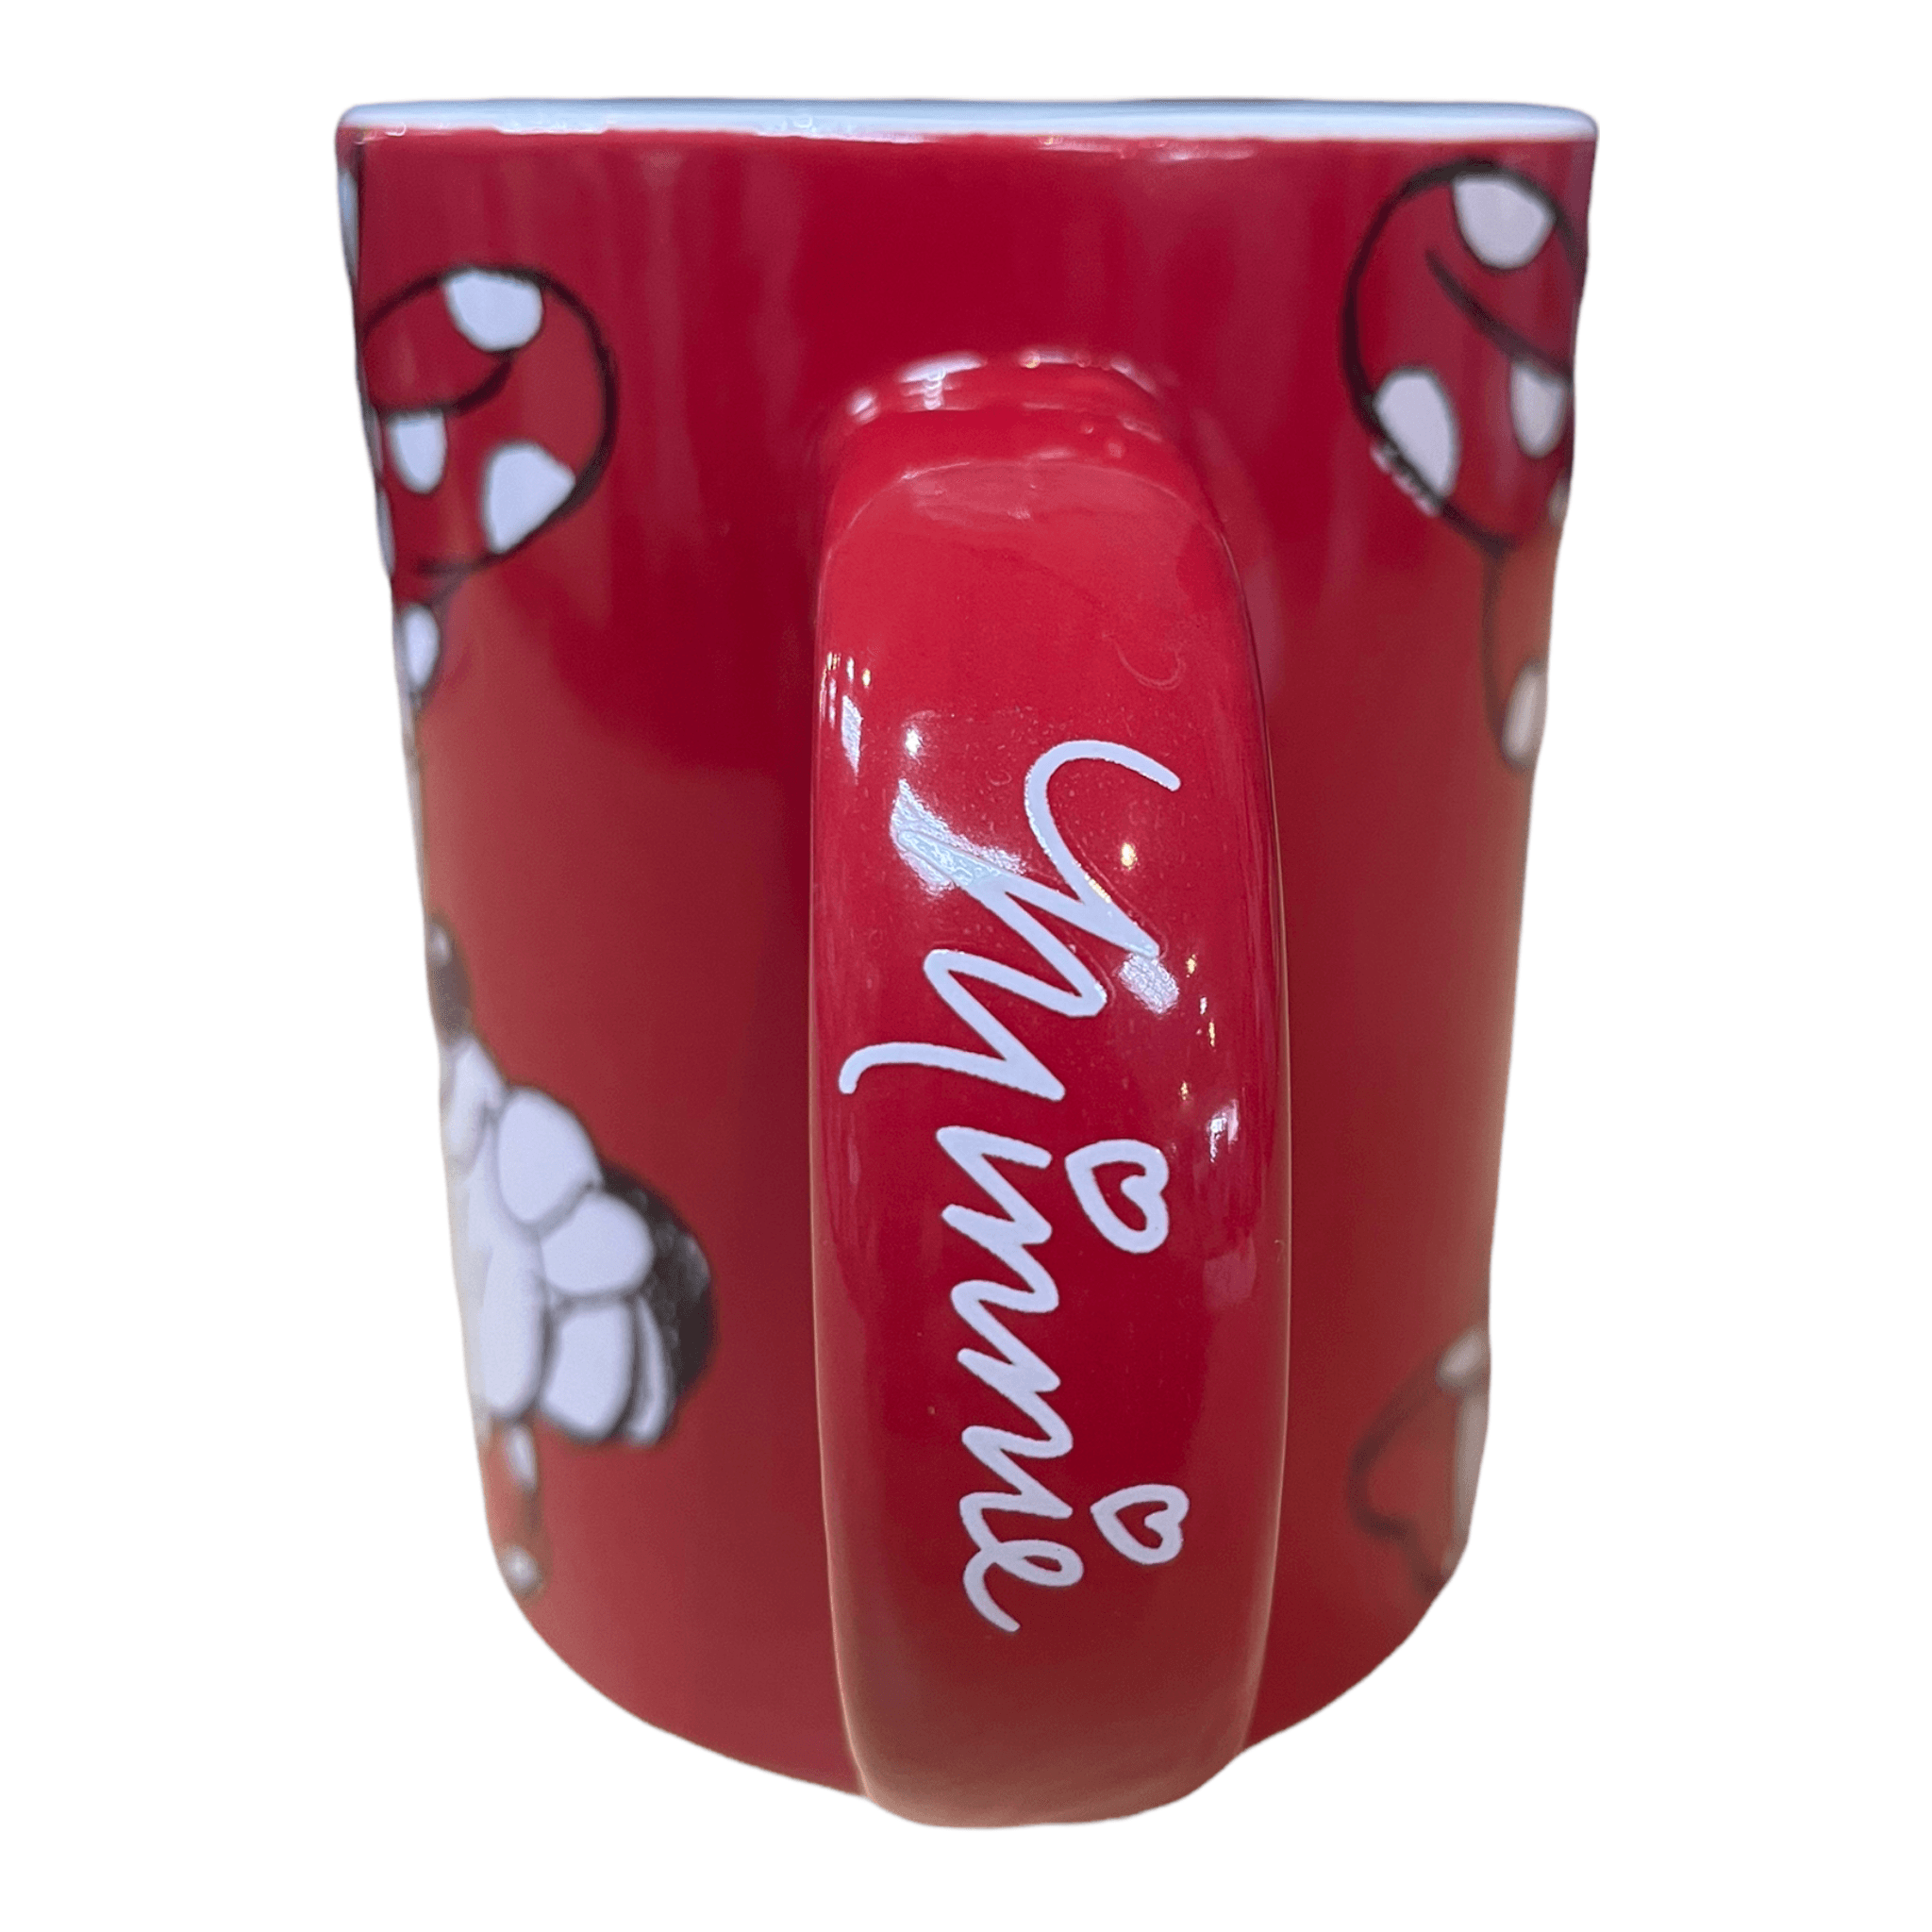 Disney Minnie Mouse Cute Red 11oz Ceramic Mug